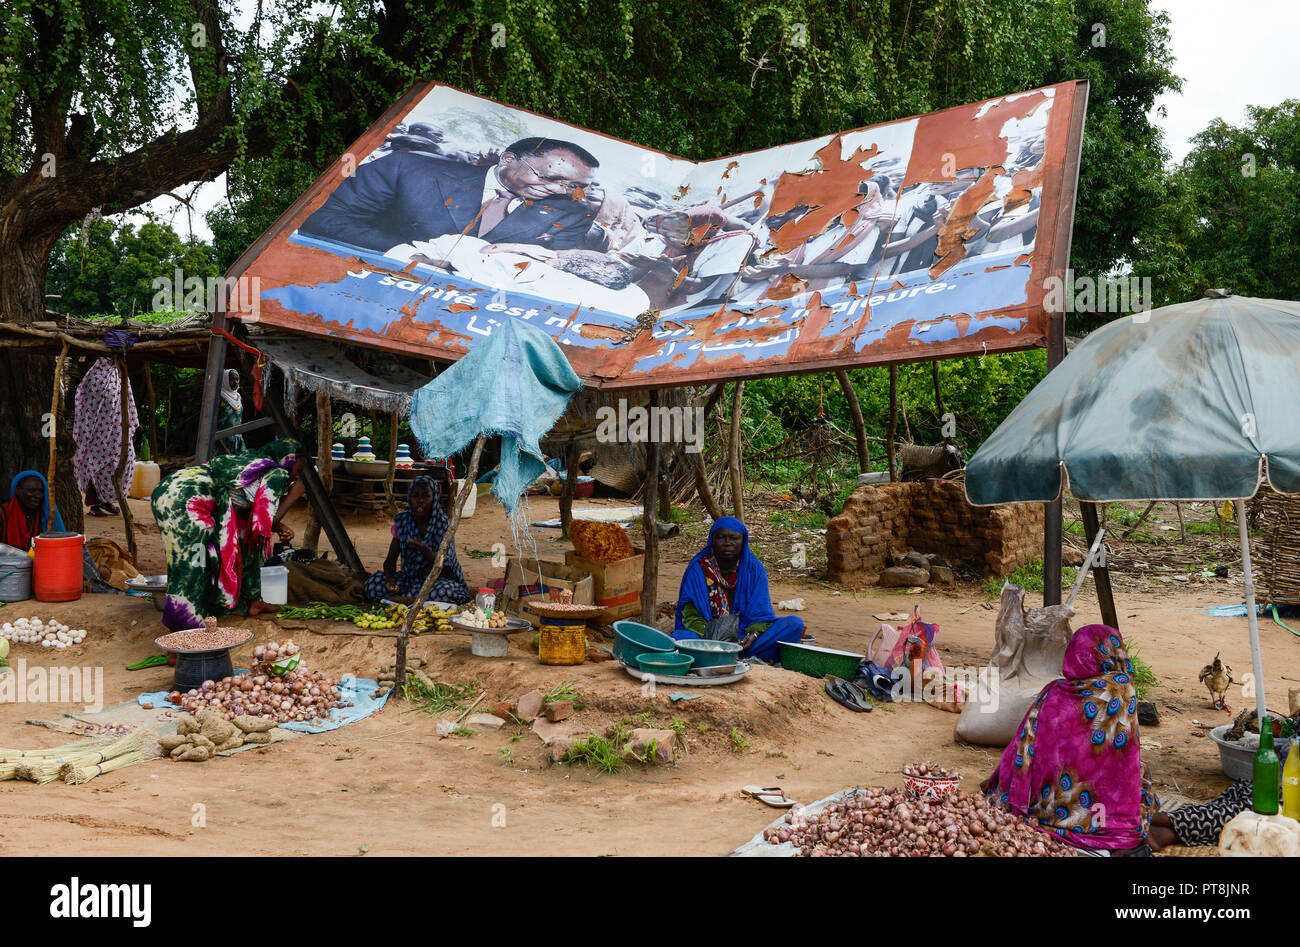 Tschad, Goz Beida, Markt, faulen Bild von Präsident Idriss Déby Itno/TSCHAD, Goz Beida, Markt, durch haengendes Prasesident schaebiges Bild von Idriss Déby Itno Stockfoto